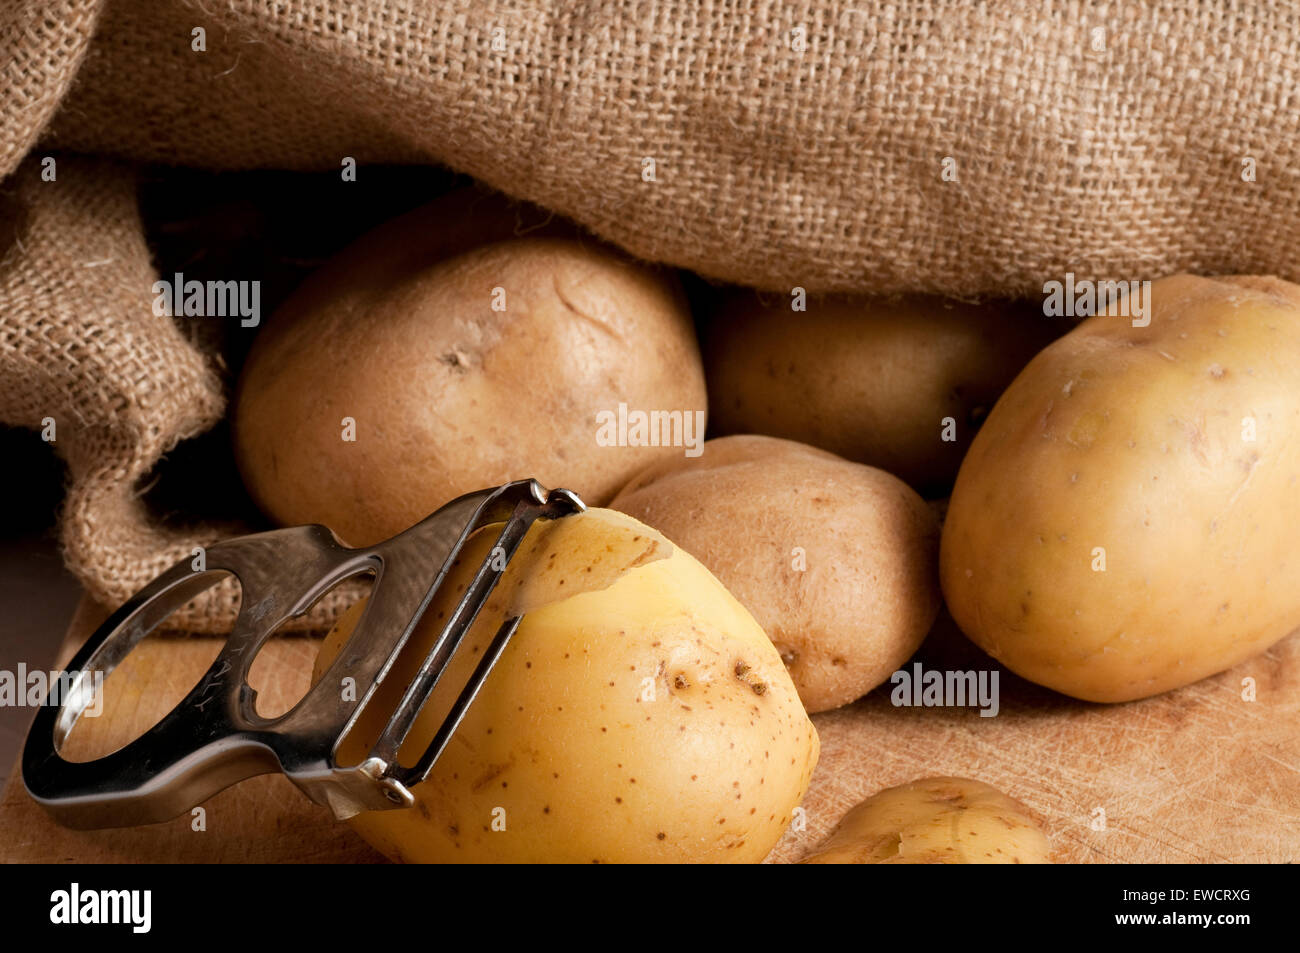 potatoes outside a jute sack Stock Photo